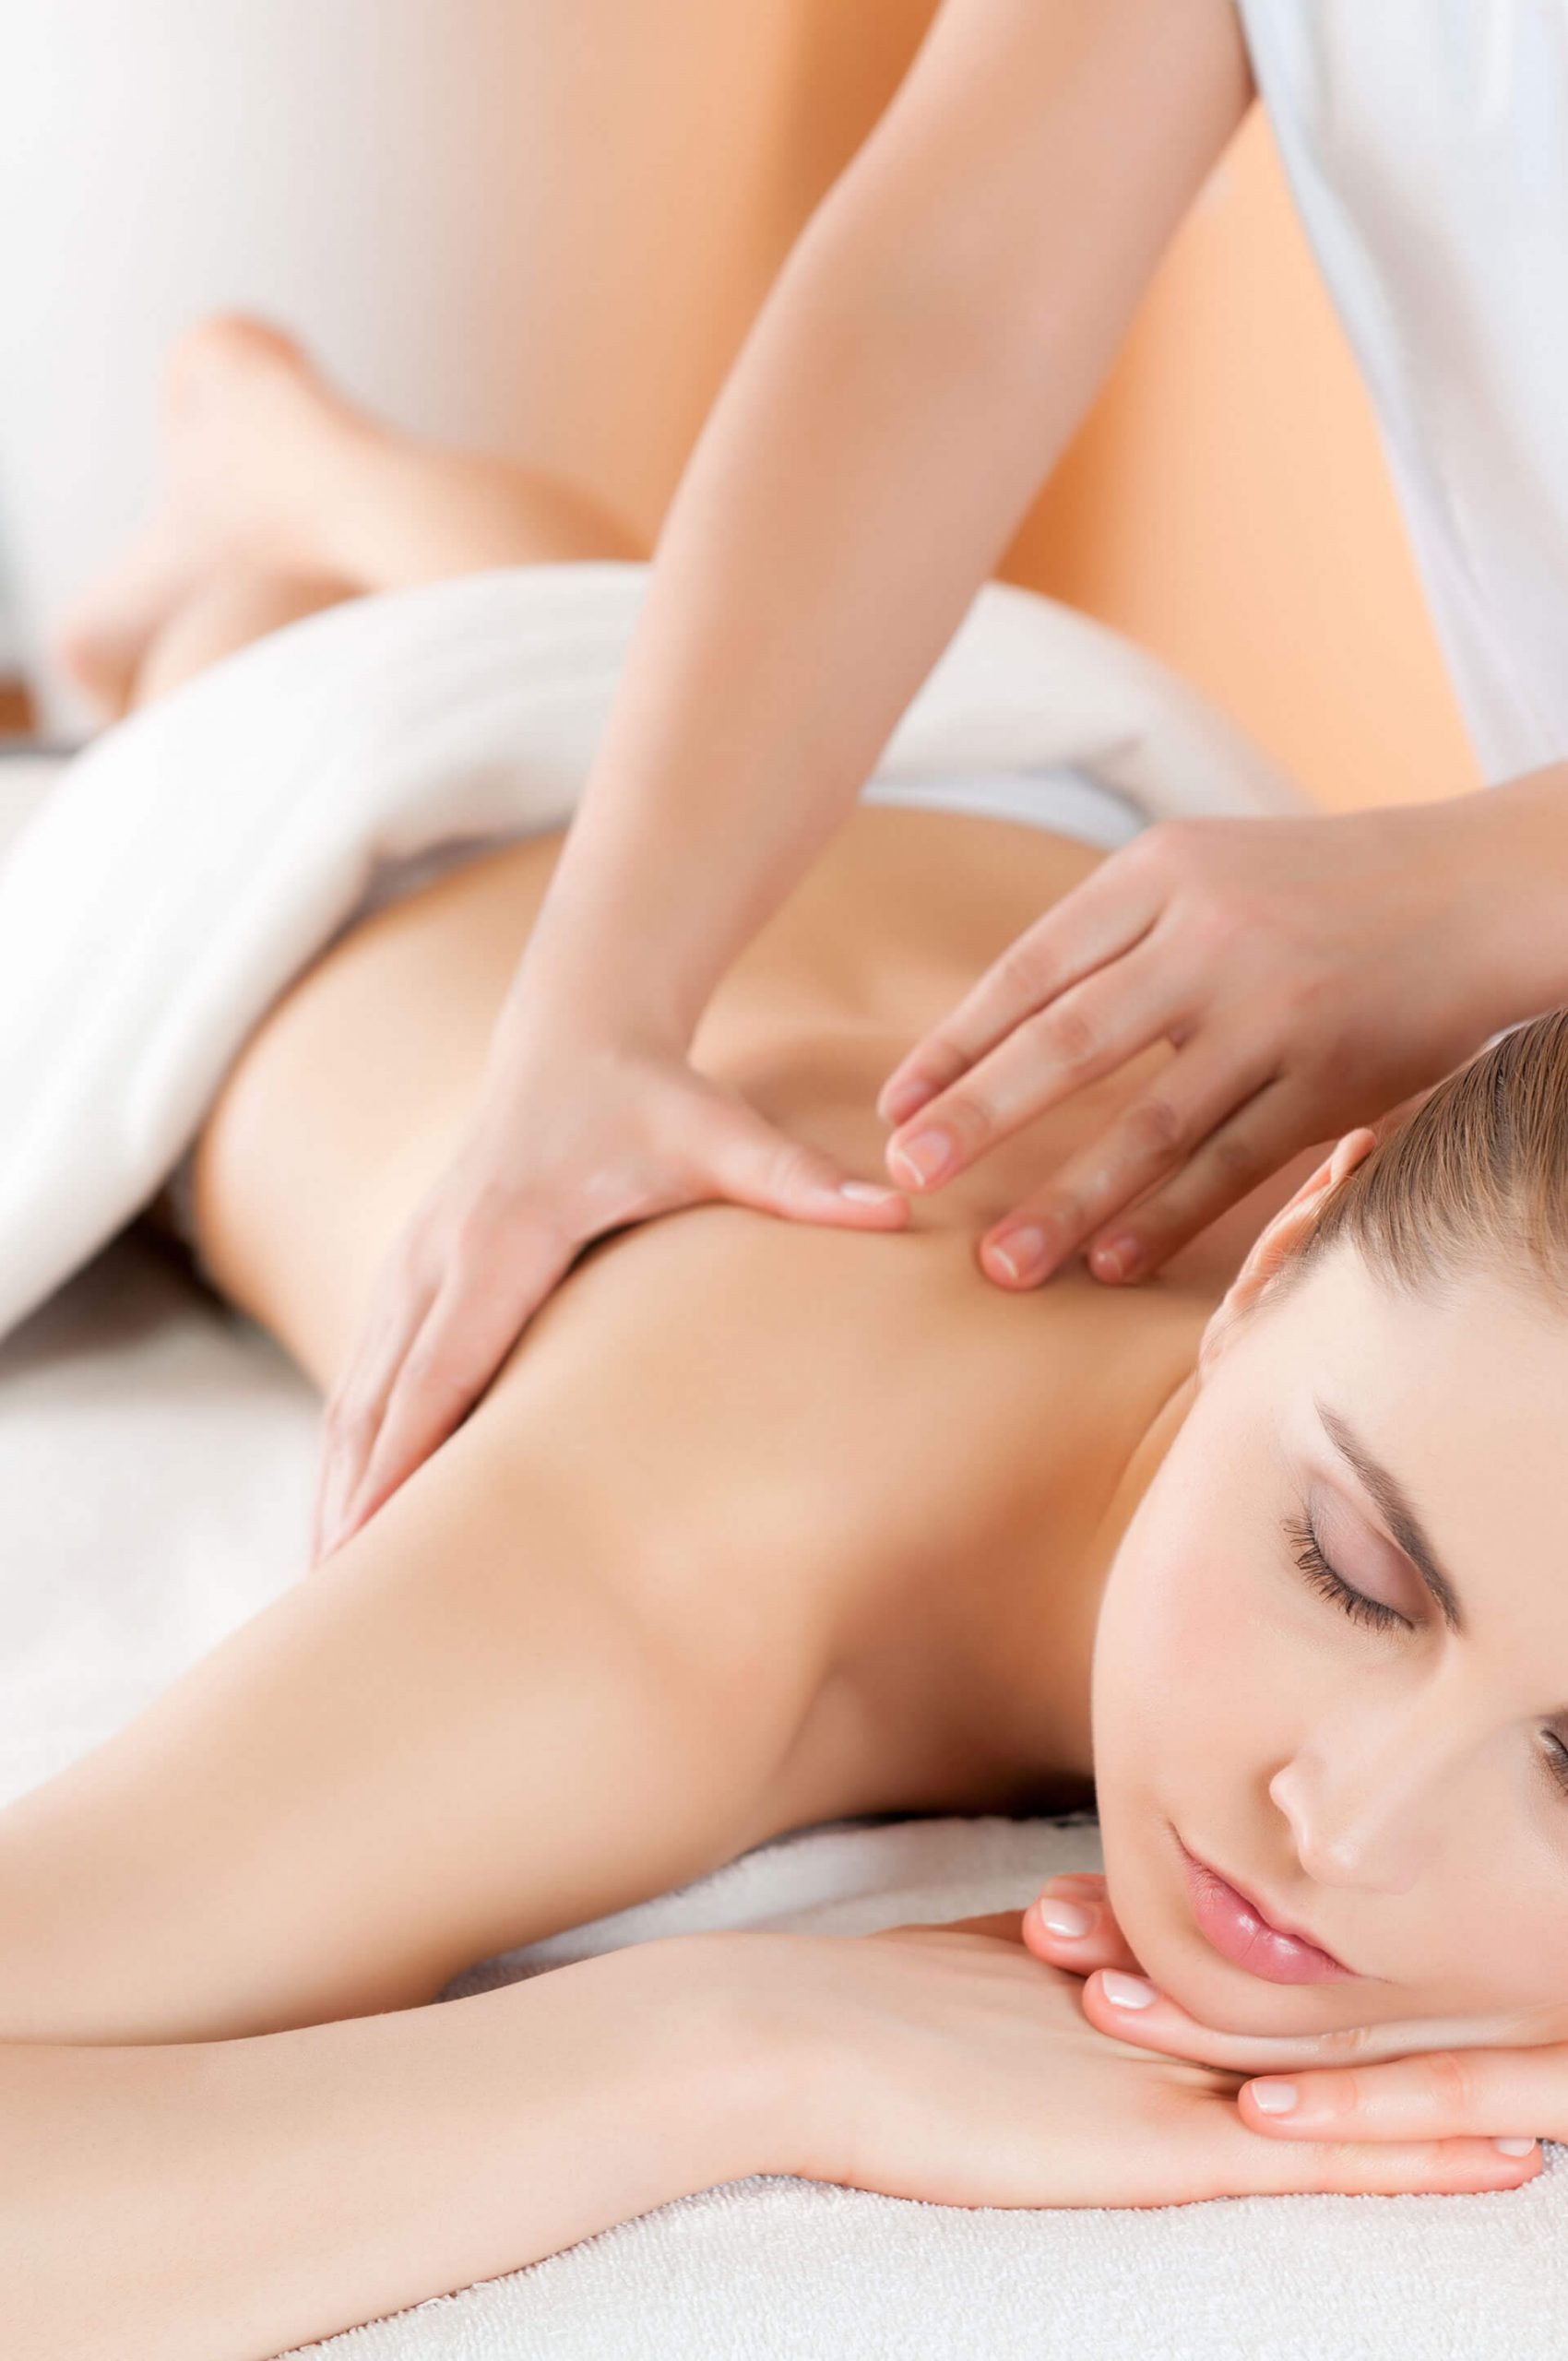 lantana-centro-benessere-massaggi-aromaterapia-drenante-decontratturante-rilassante